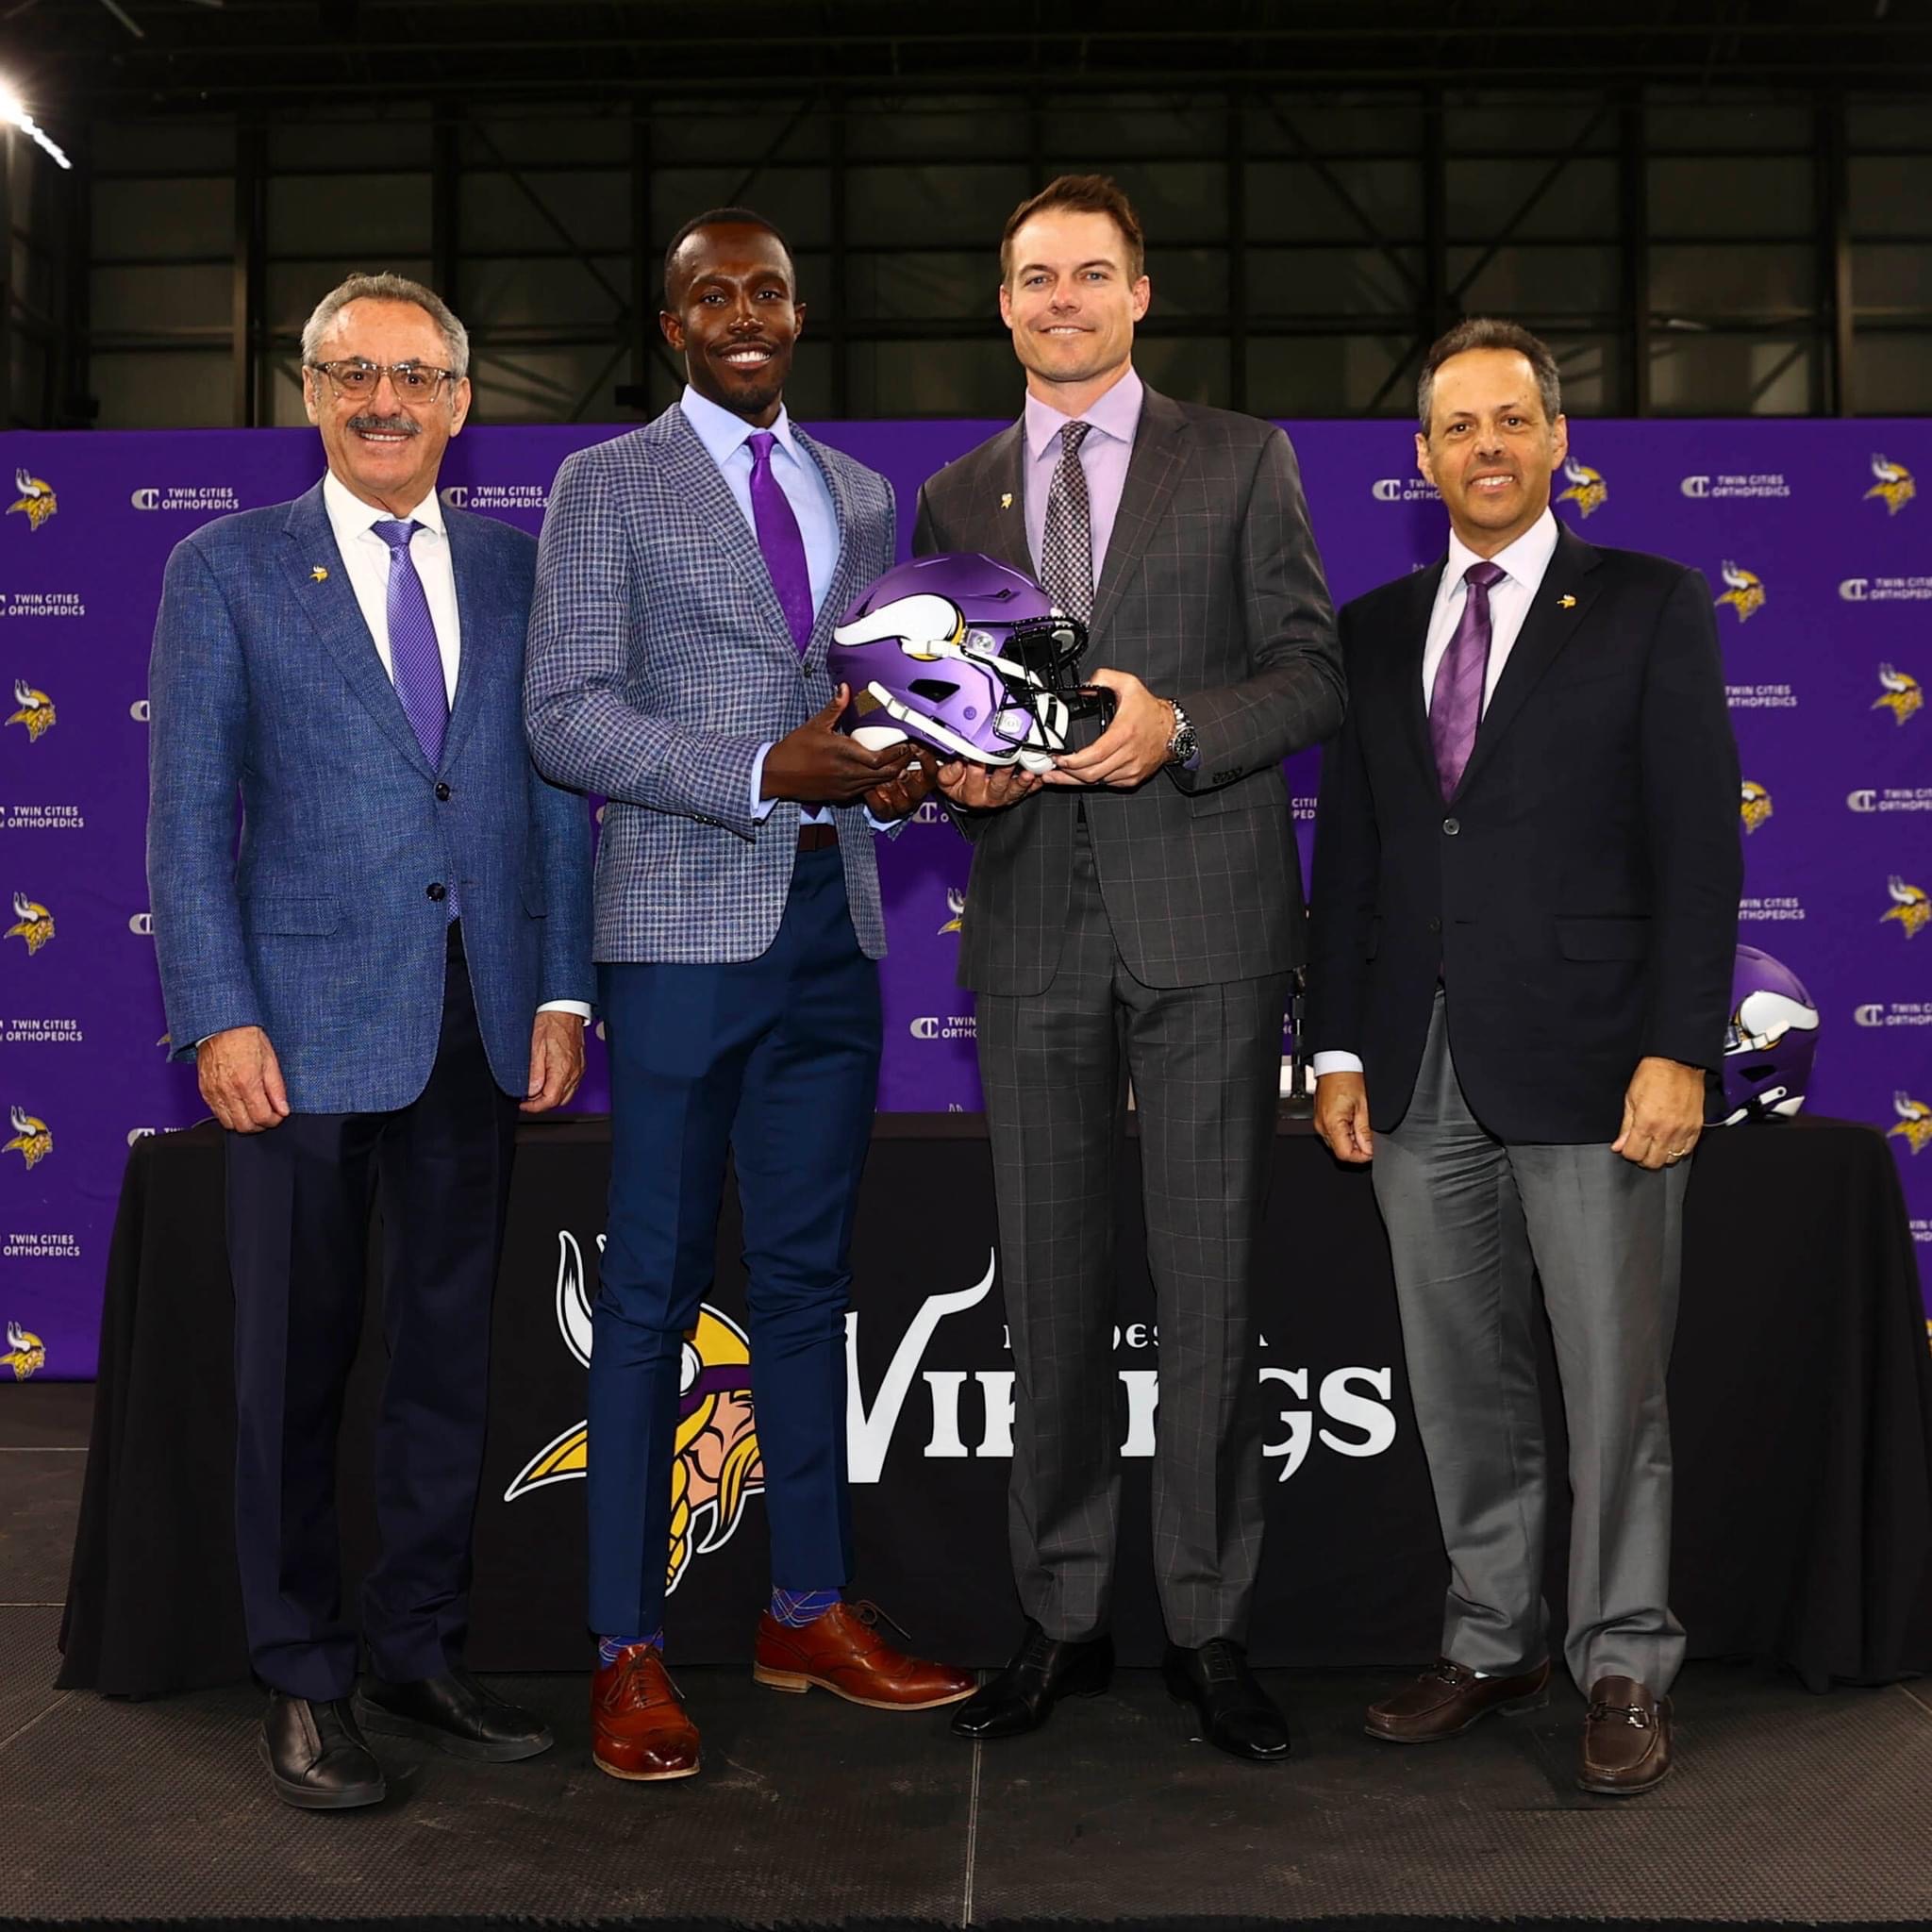 Kevin O’Connell fue presentado con los Minnesota Vikings como entrenador en jefe